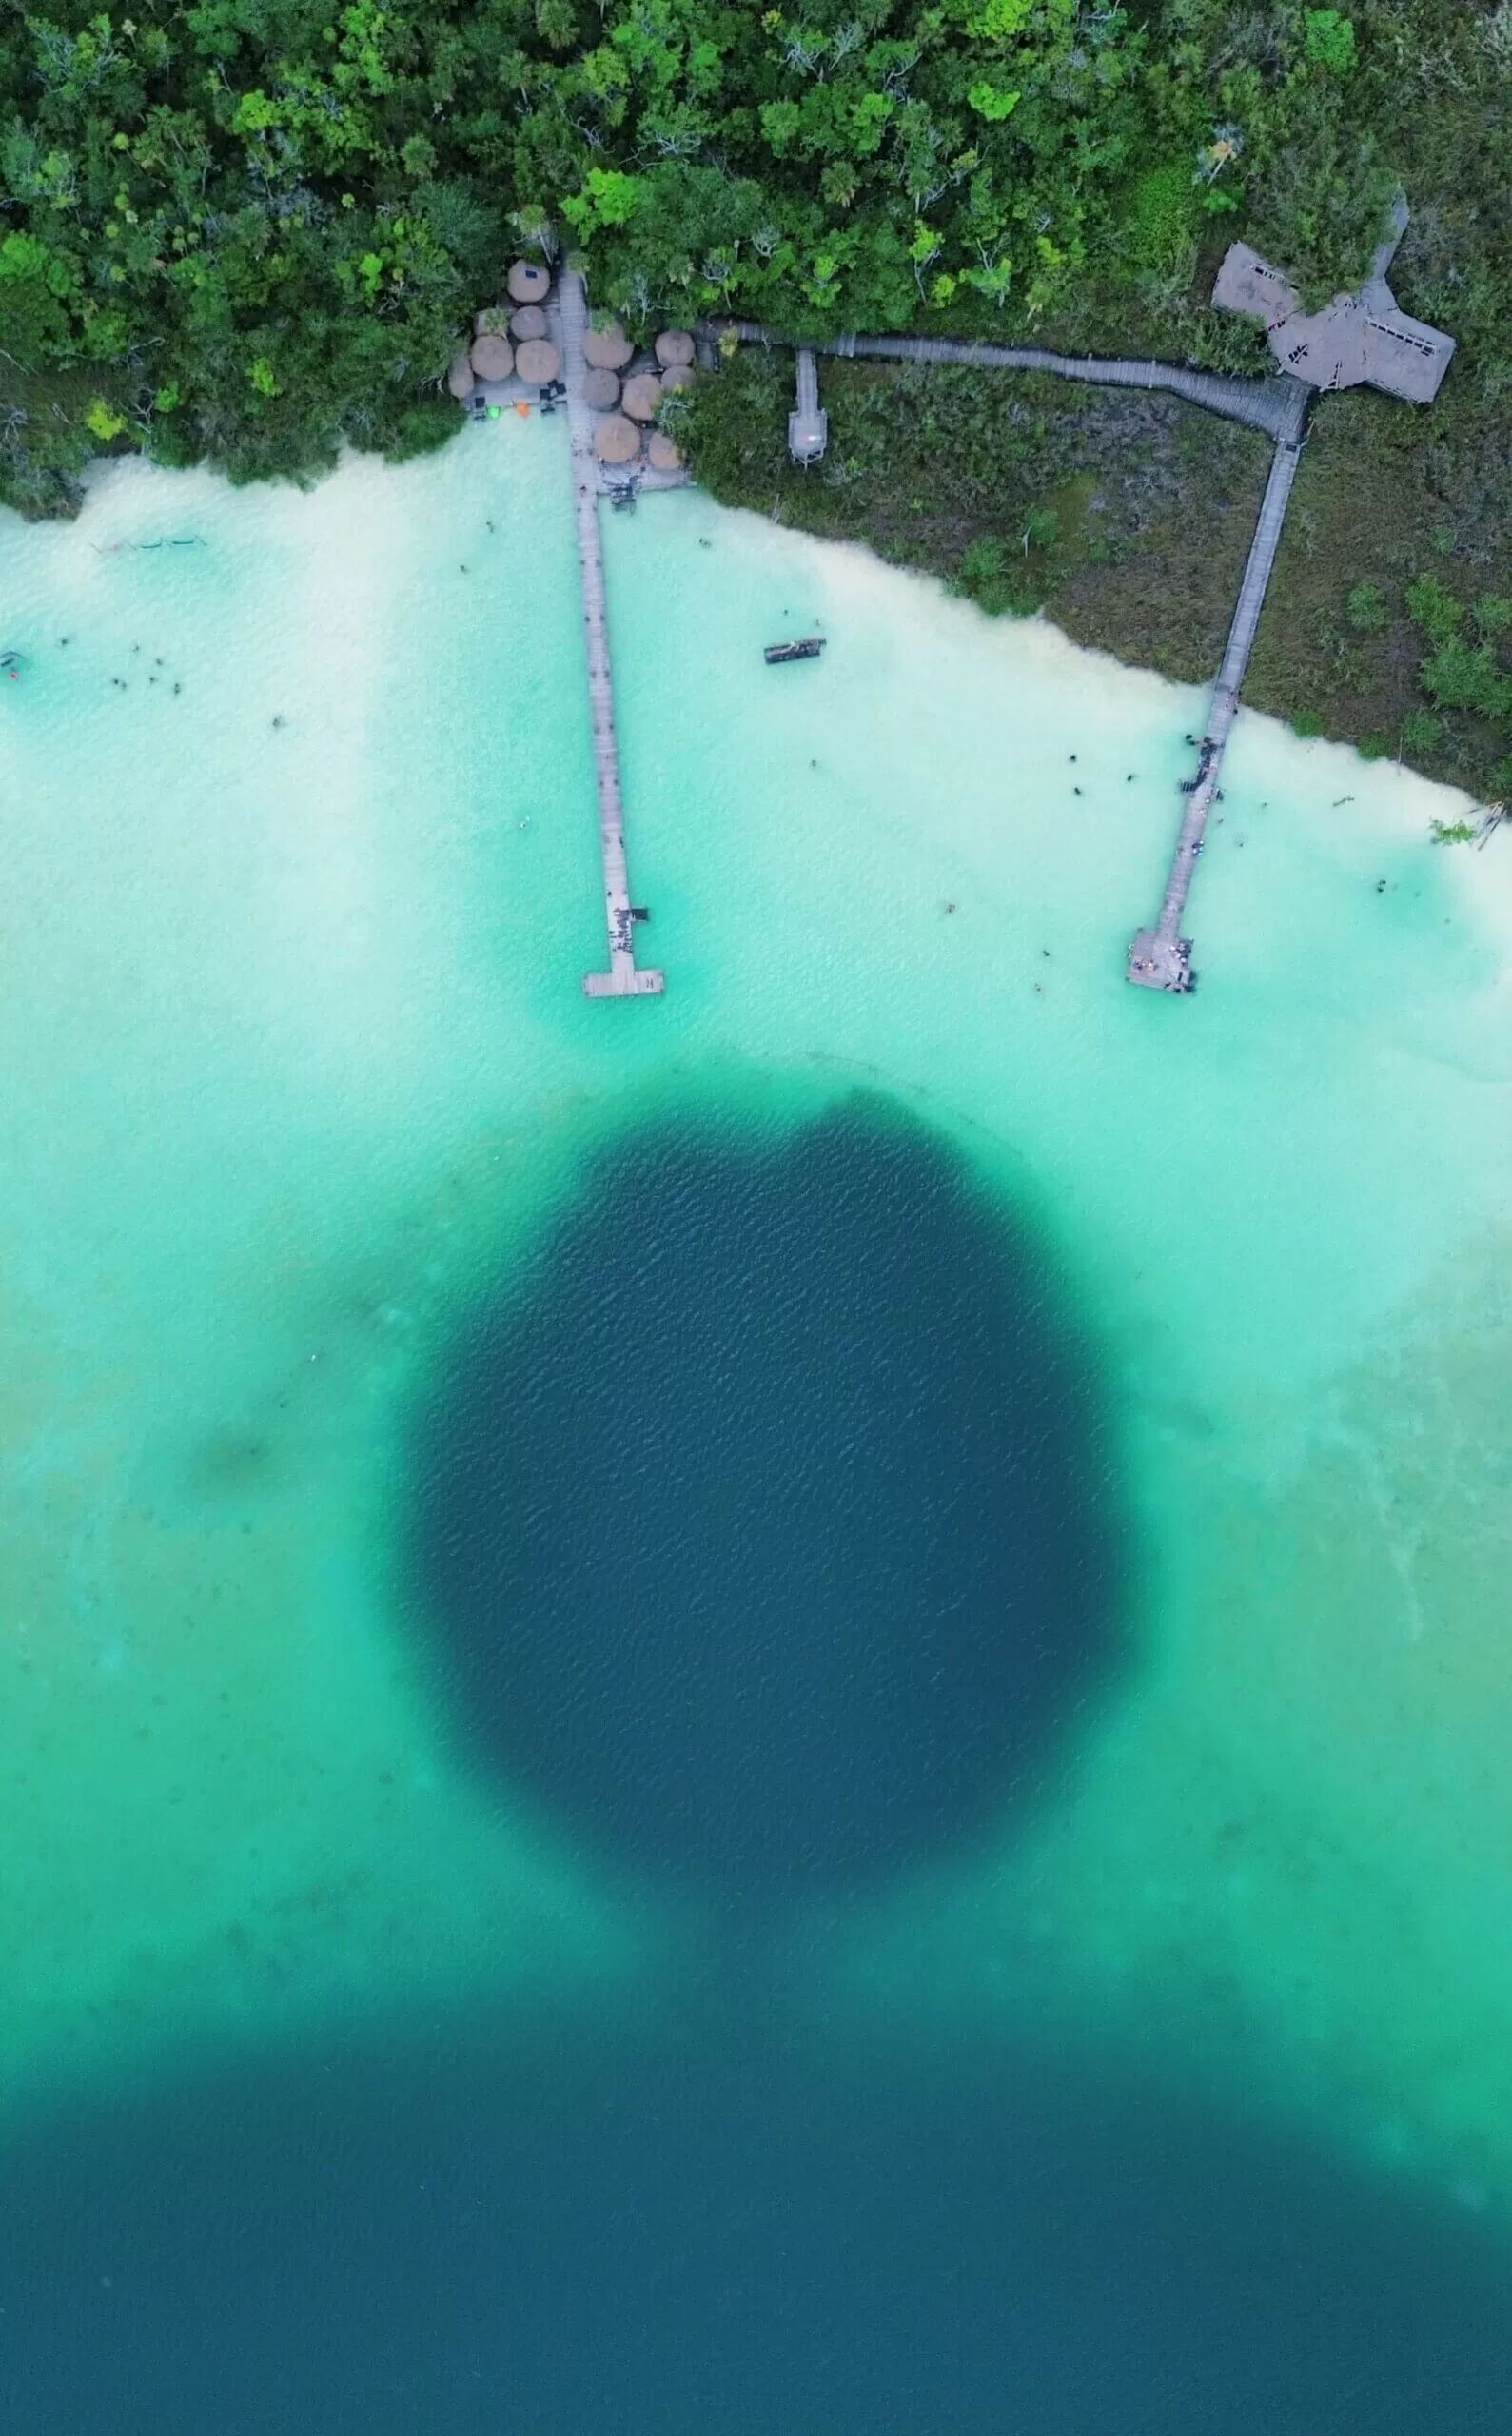 foto de la laguna kaan luum desde el drone. se ve perfectamente el cambio de color en la laguna donde esta el cenote. turquesa alrededor y al centro un circulo azul oscuro.